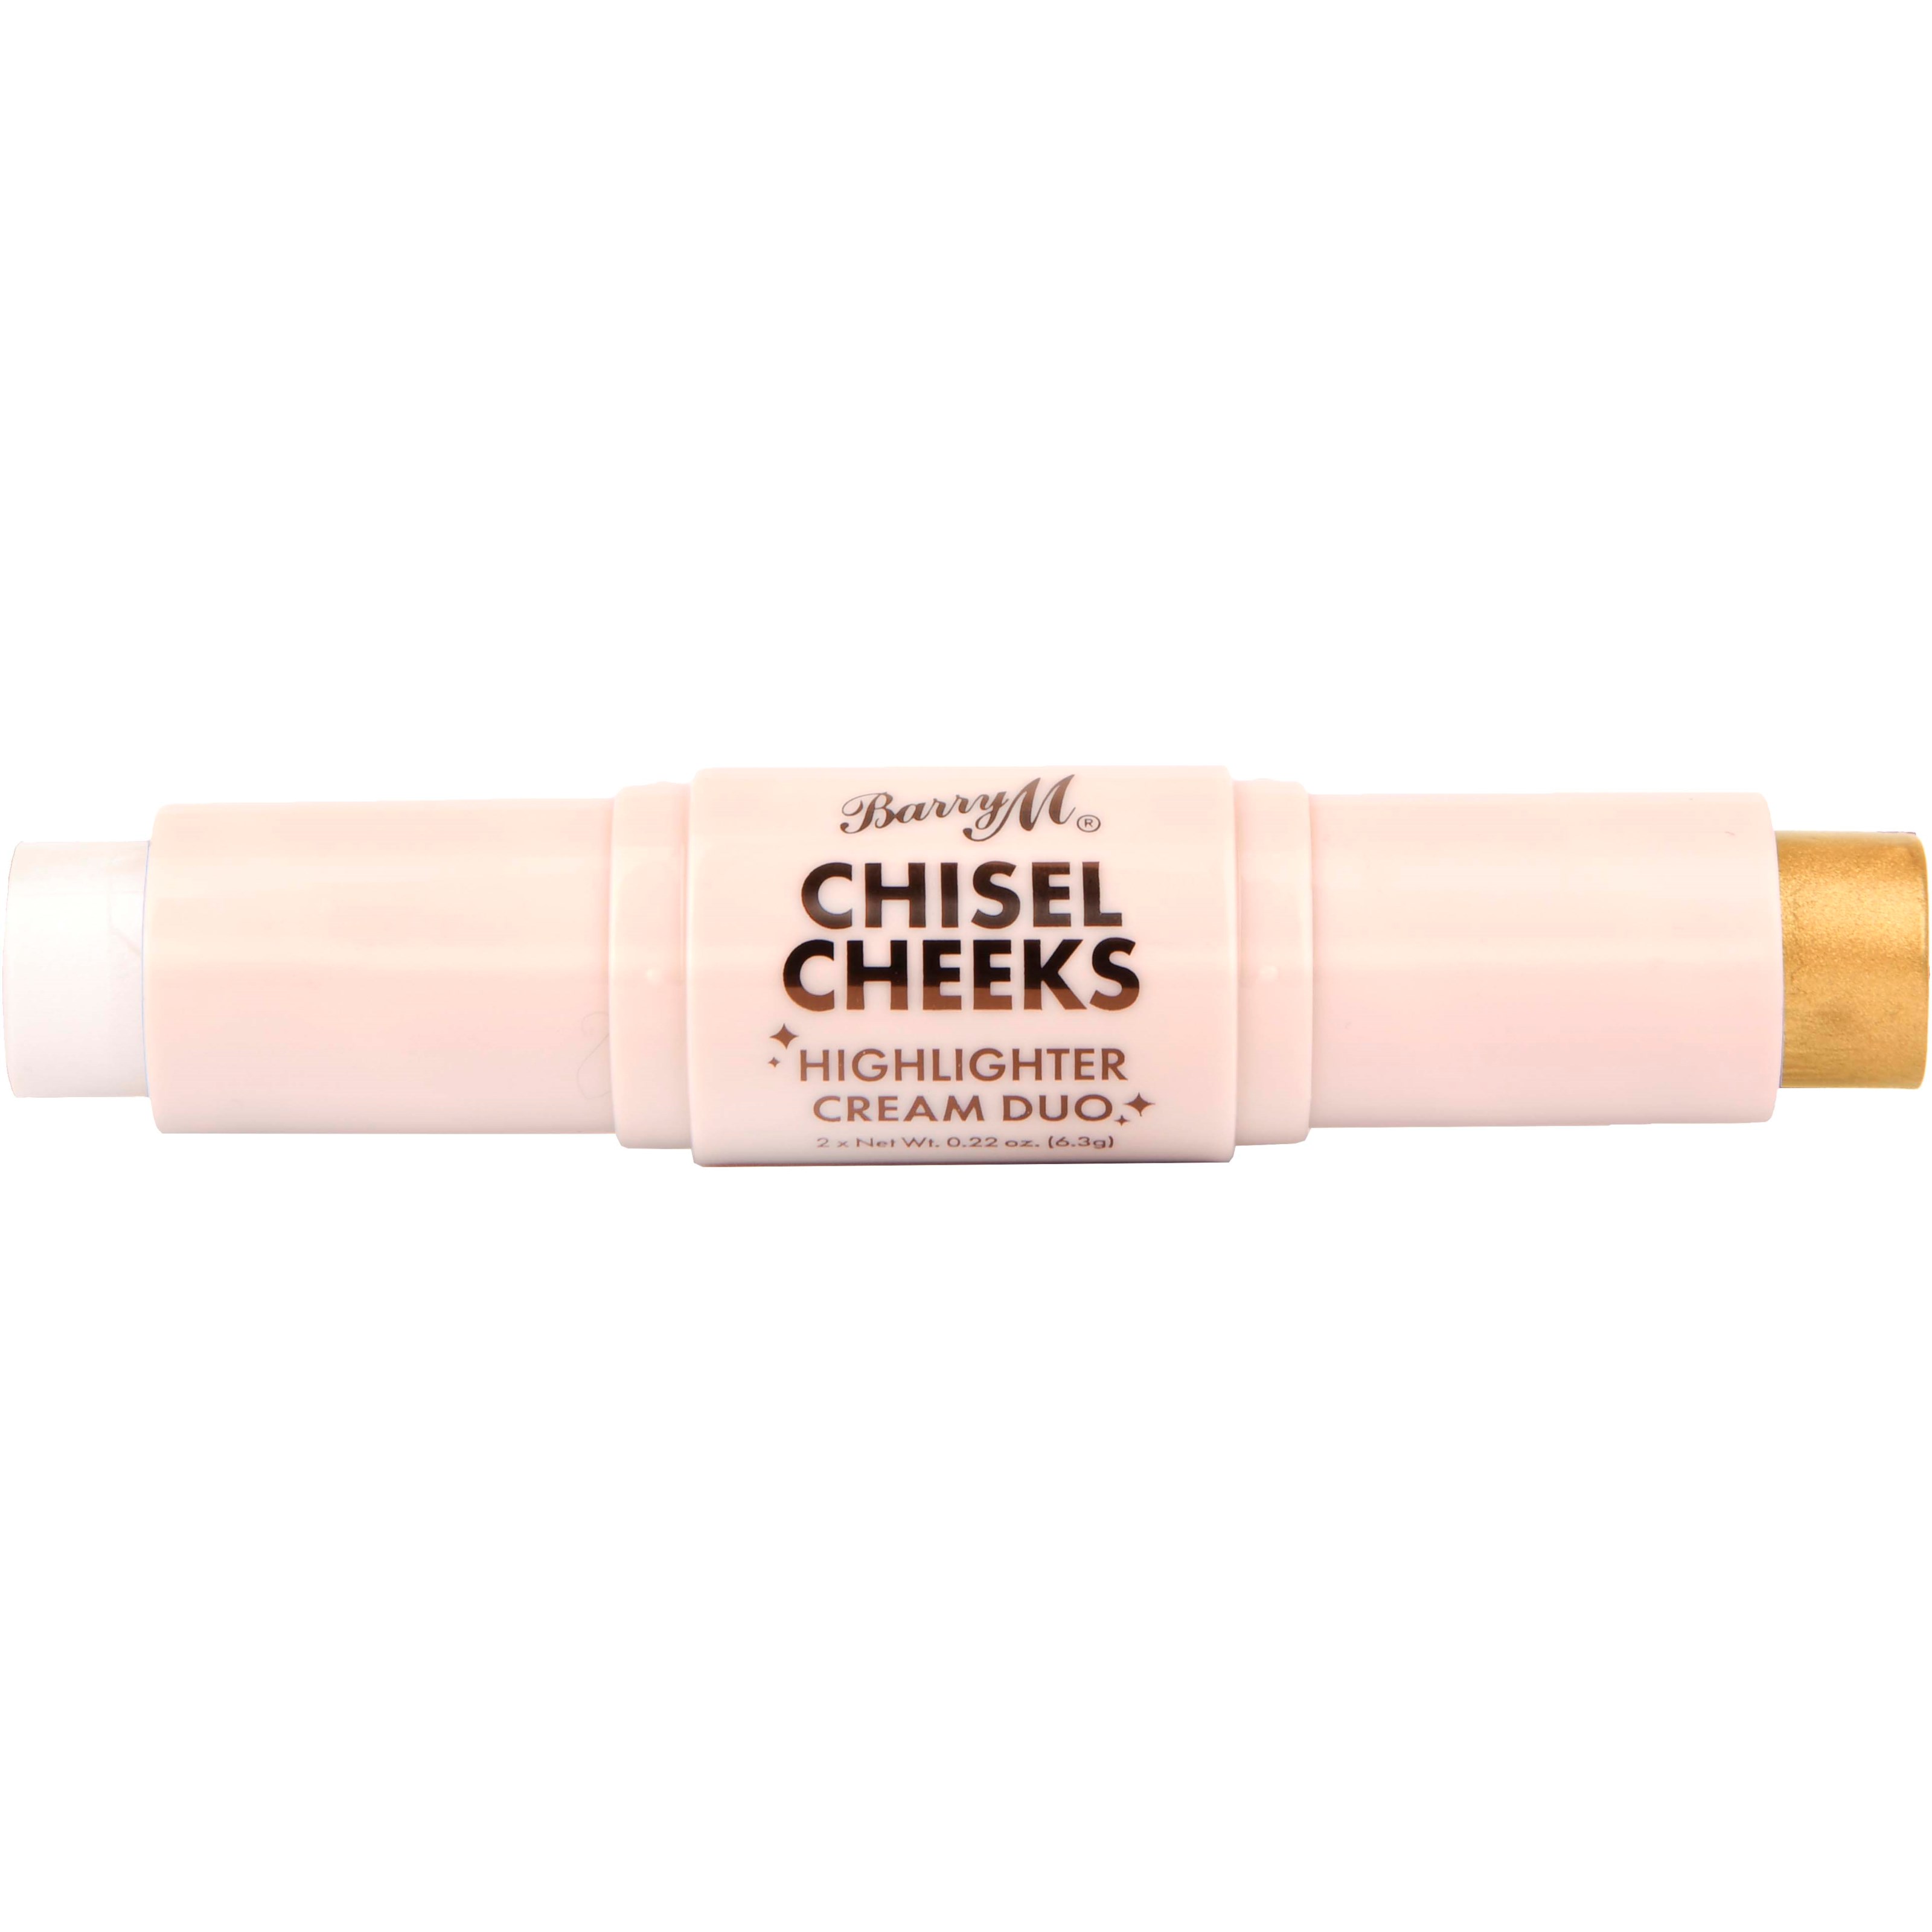 Läs mer om Barry M Chisel Cheeks Highlighter Cream Duo Silver/Gold